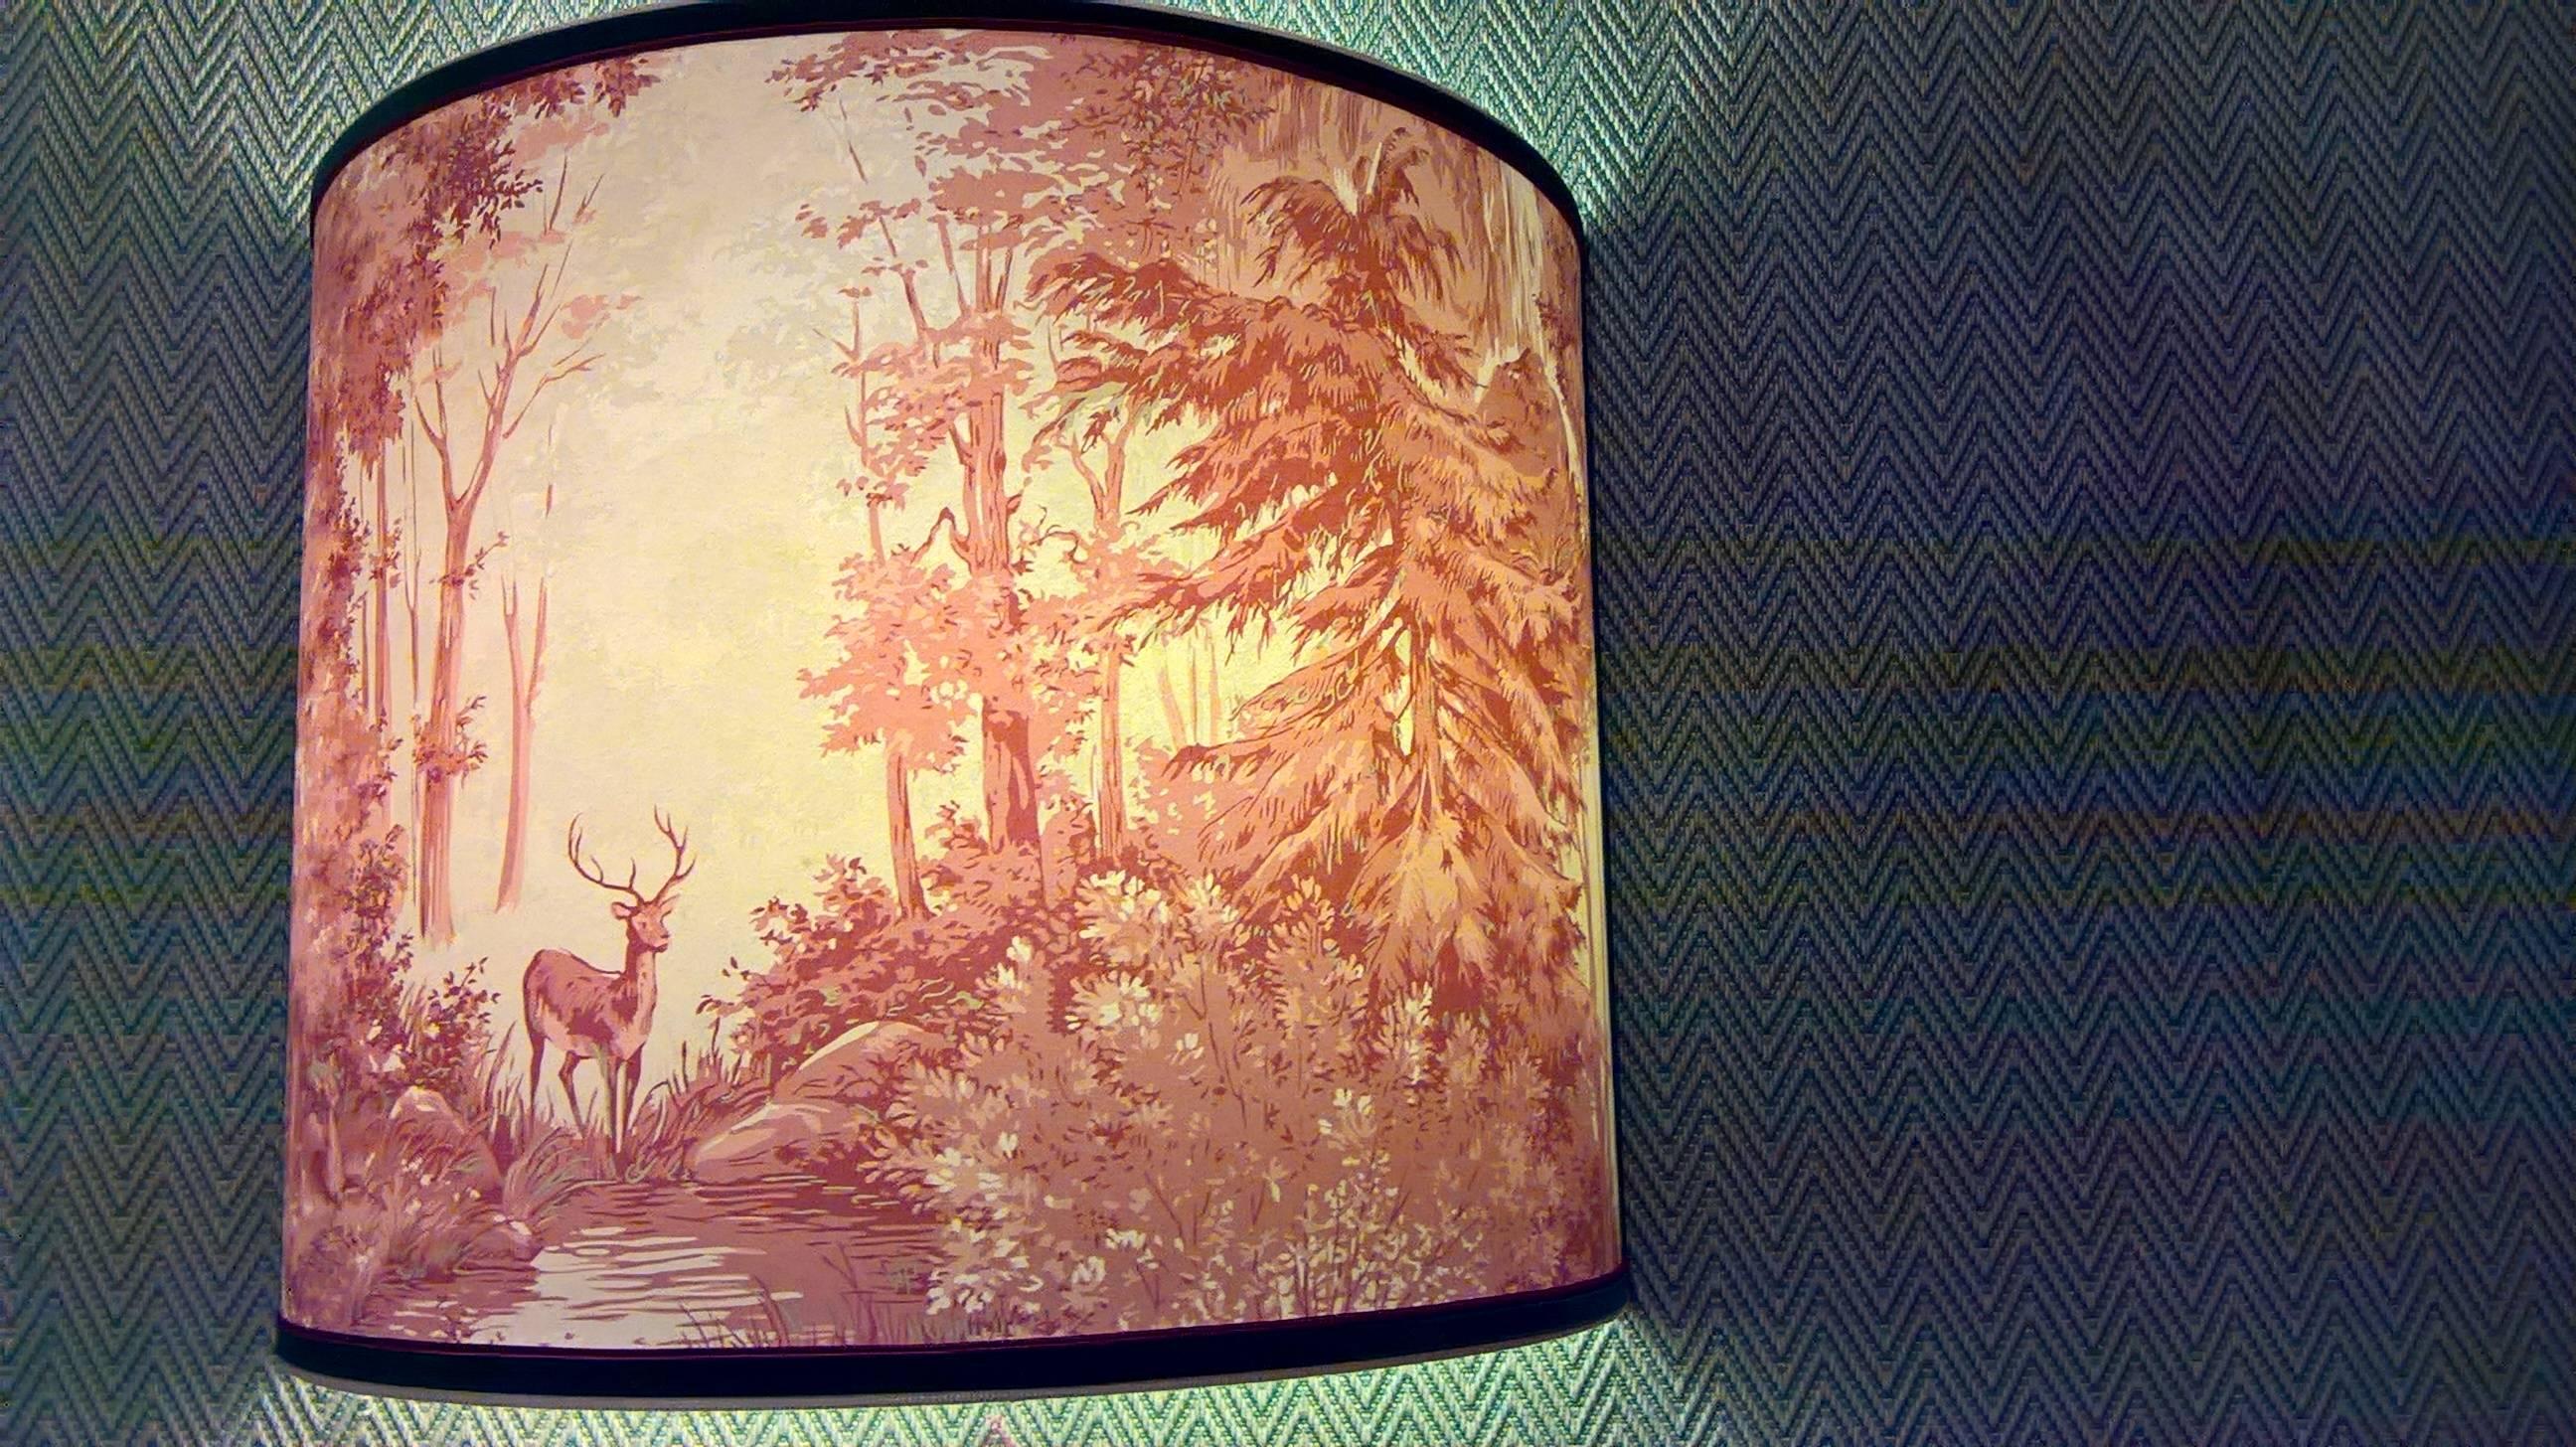 Großer handgefertigter Lampenschirm aus Tapete mit einer Jagdszene in Rot und Beige im Stil des Schwarzwaldes. Handgefertigt in Österreich. 
Behoben mit grünem und rotem Paspol. Zwei handgefertigte Eisenwinkel für die Stromzufuhr werden mit den